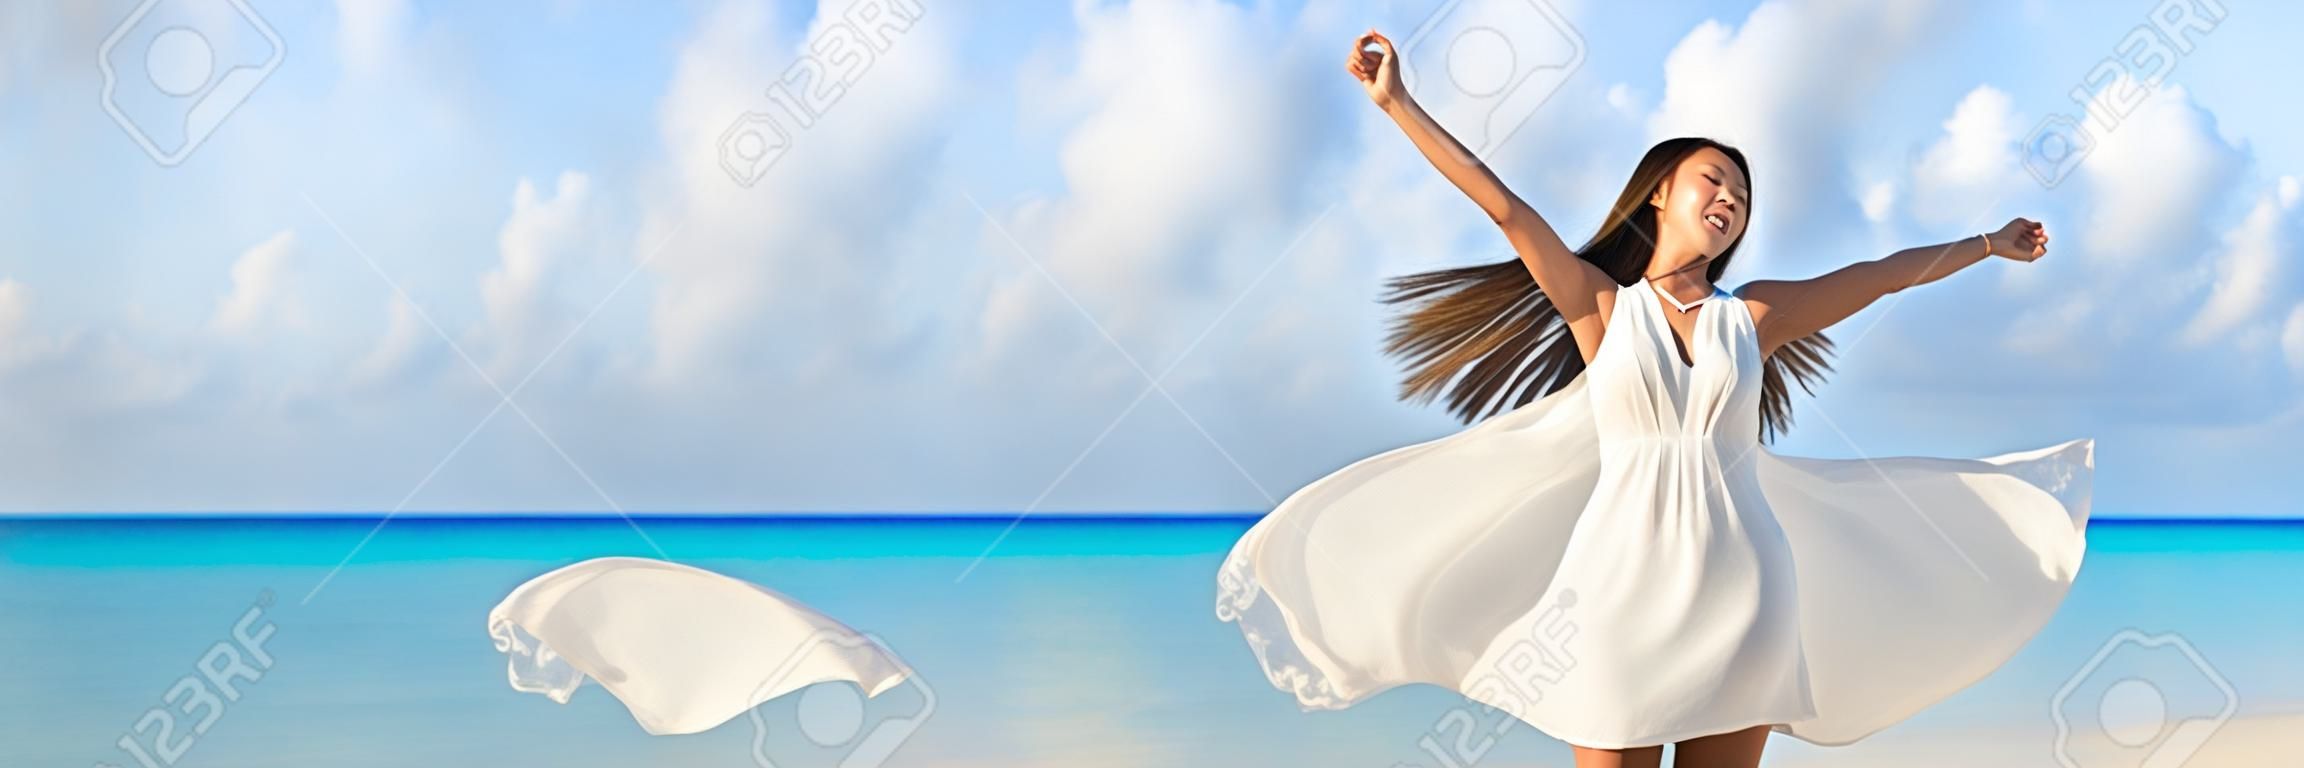 Свобода молодая женщина с оружием, вытянутой в небо с голубой океан ландшафта пляж фон копирования пространство. Баннер панорамы. Азиатская девушка в белом платье, танцы беззаботный в закат.